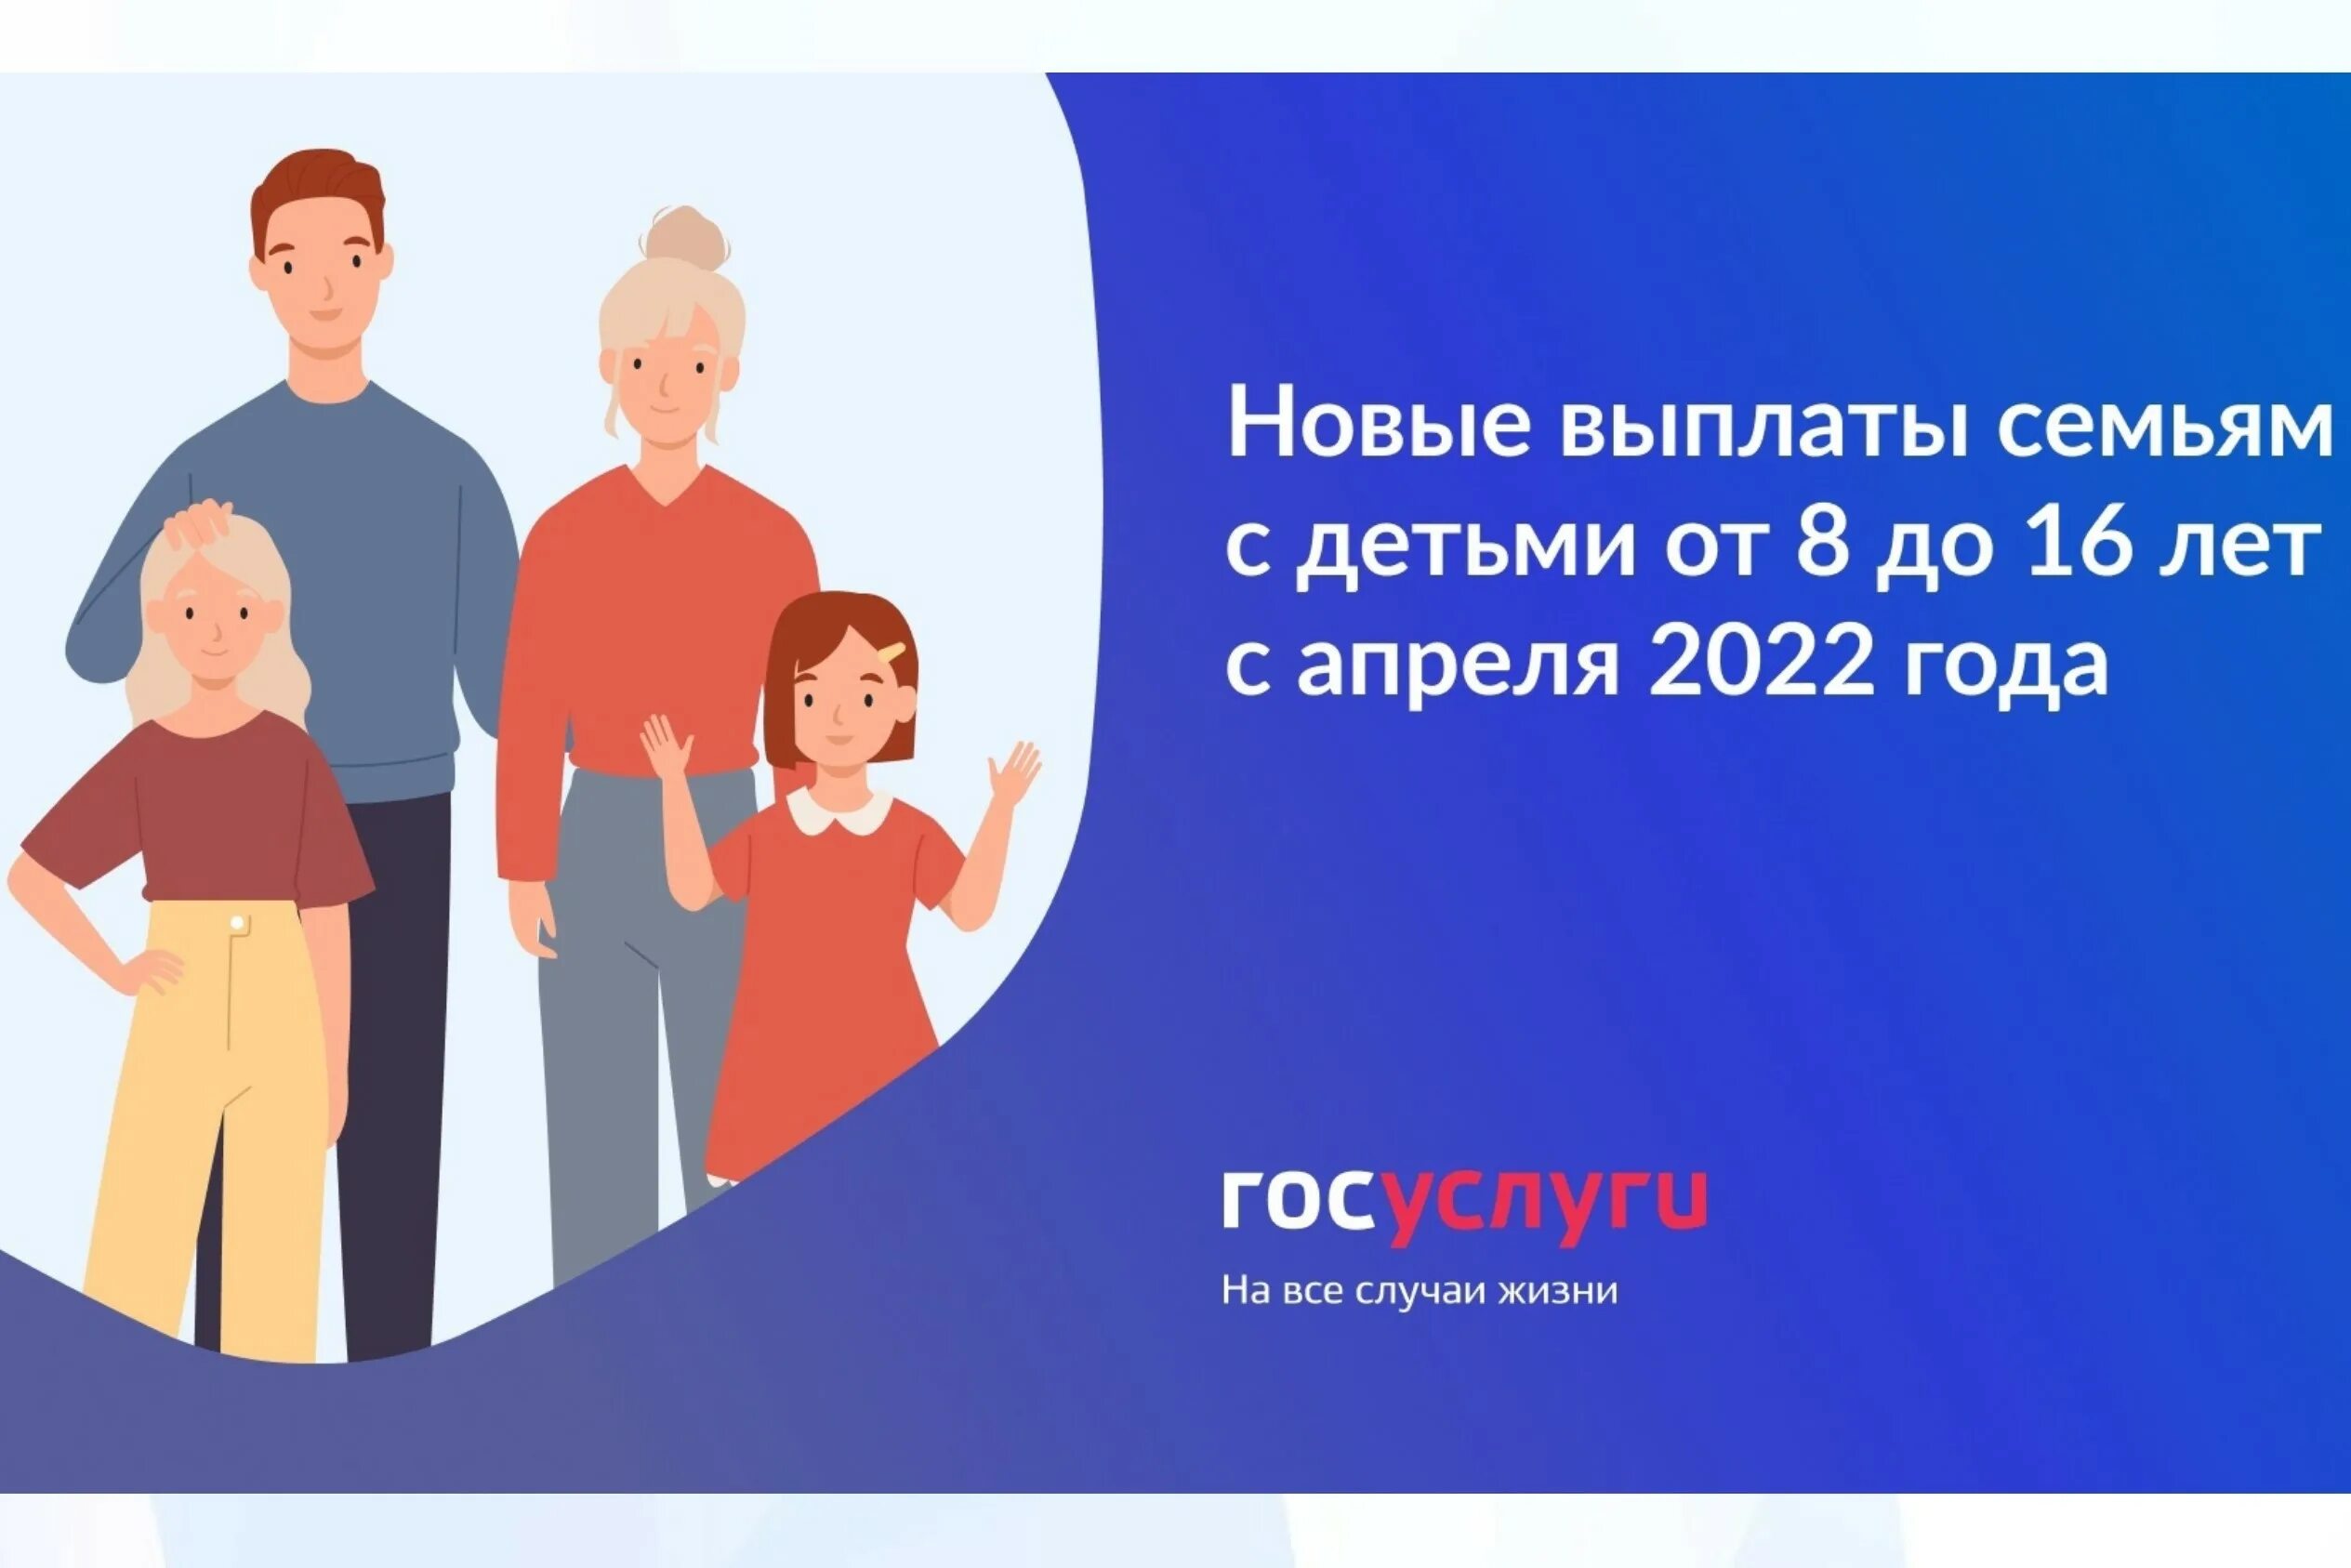 Новые выплаты россия. Выплаты семьям с детьми. Новое пособие для семей с детьми. Выплаты семьям с детьми в 2022 году. Пособие на детей с 8 до 16 лет 2022 год.